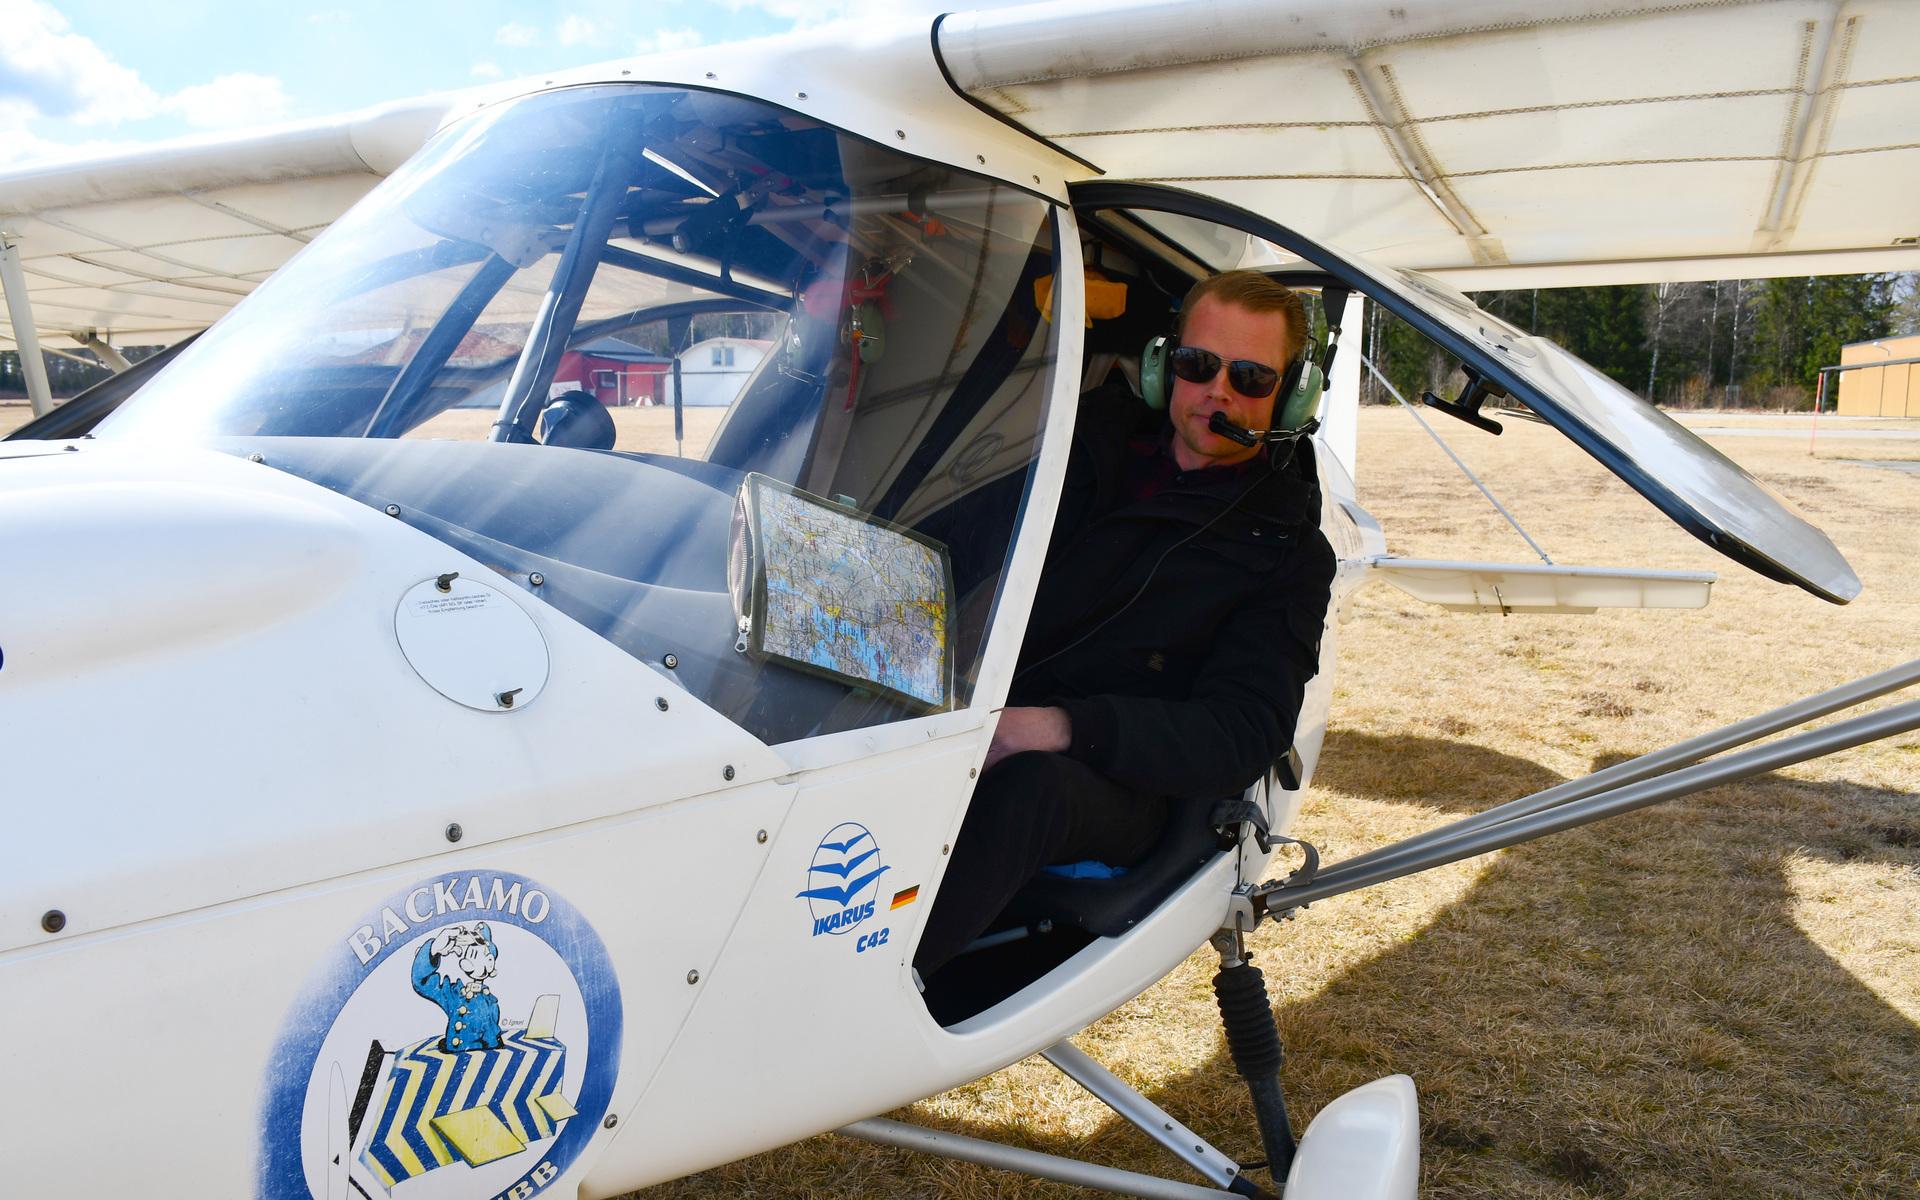 Ordförande Thomas Björk sökte sig till Backamo flygklubb 2013, och tre intensiva månader senare hade han skaffat sig ett flygcertifikat.